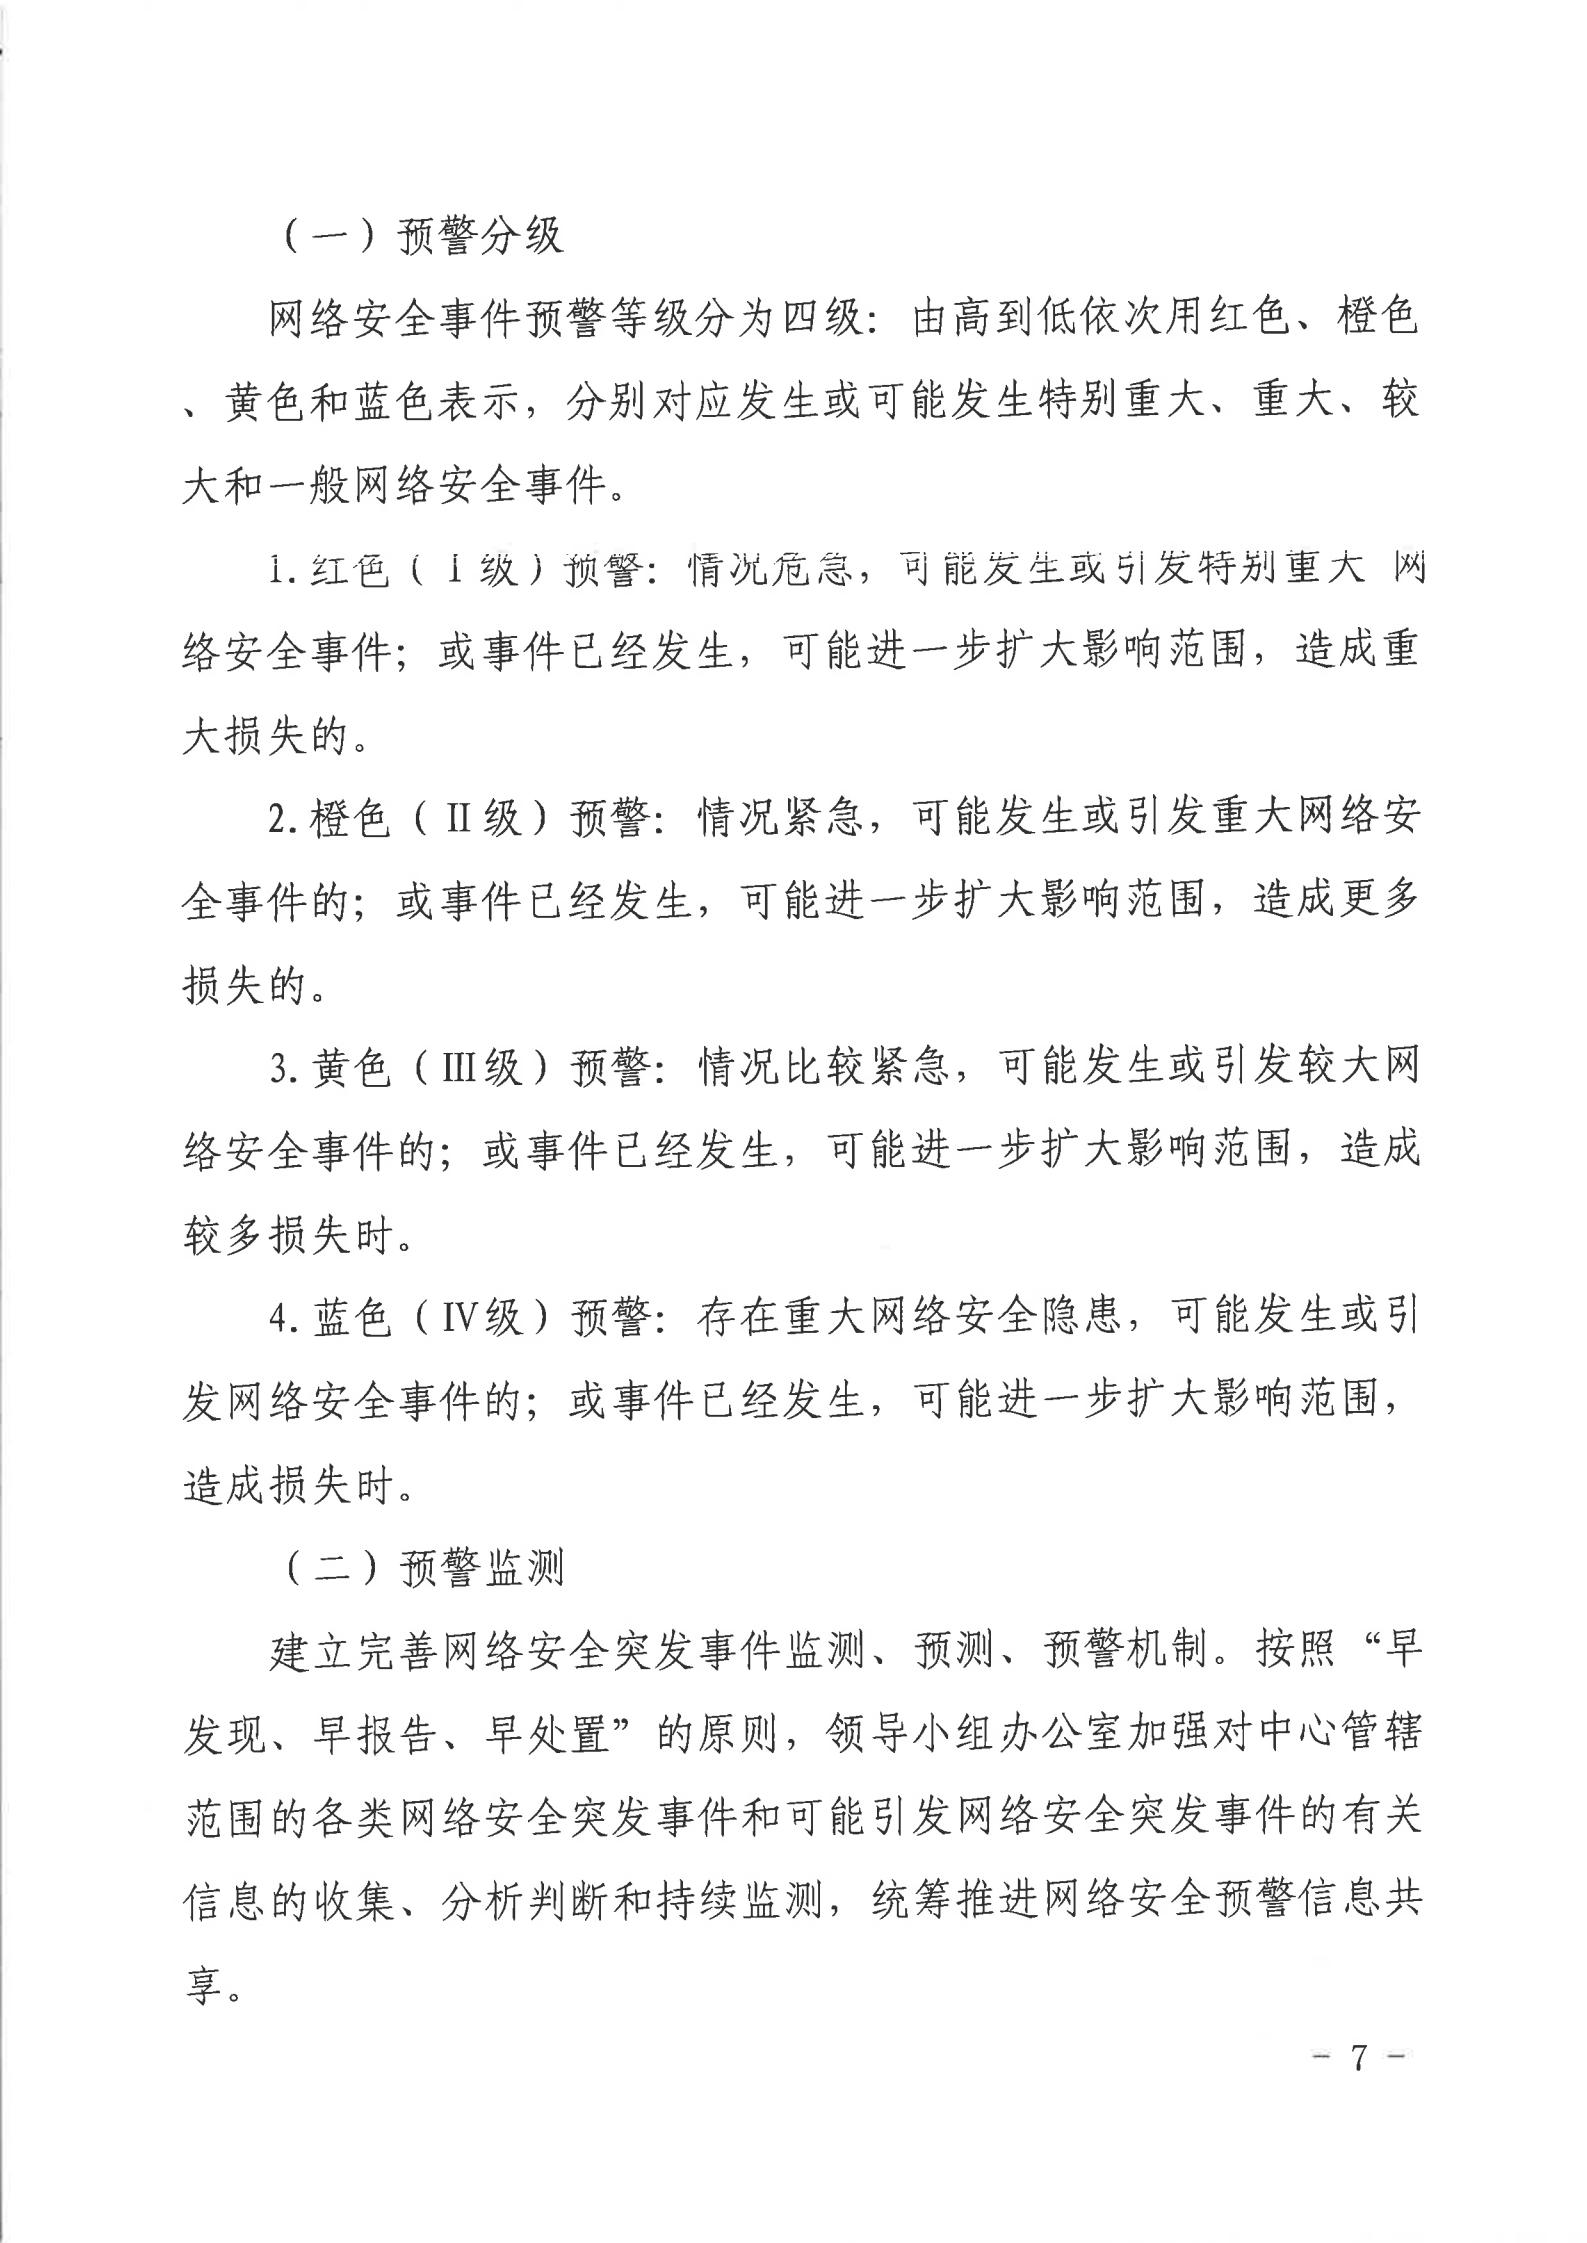 湛江市人民政府行政服务中心网络安全应急预案_06.jpg